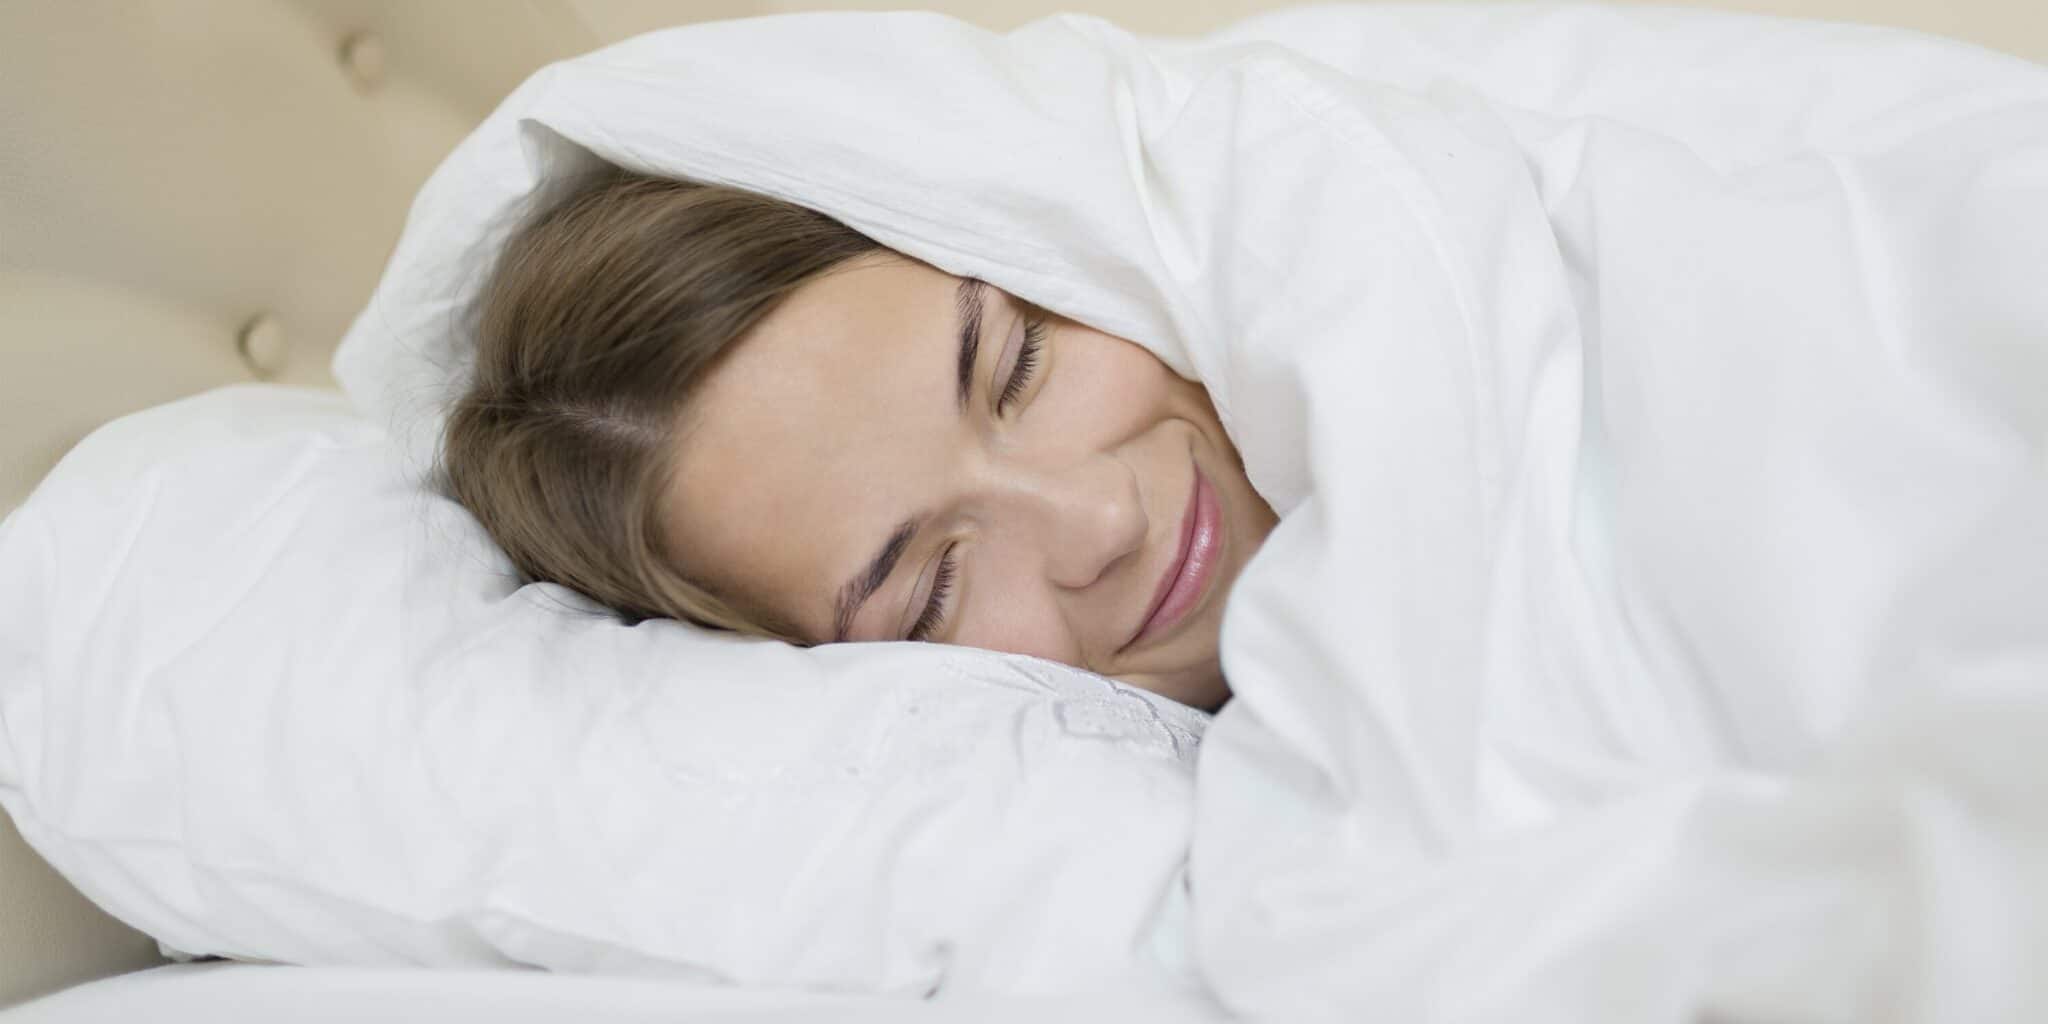 Ցերեկային երկարատև քունը հակացուցված է դեպրեսիա ունեցող մարդկանց